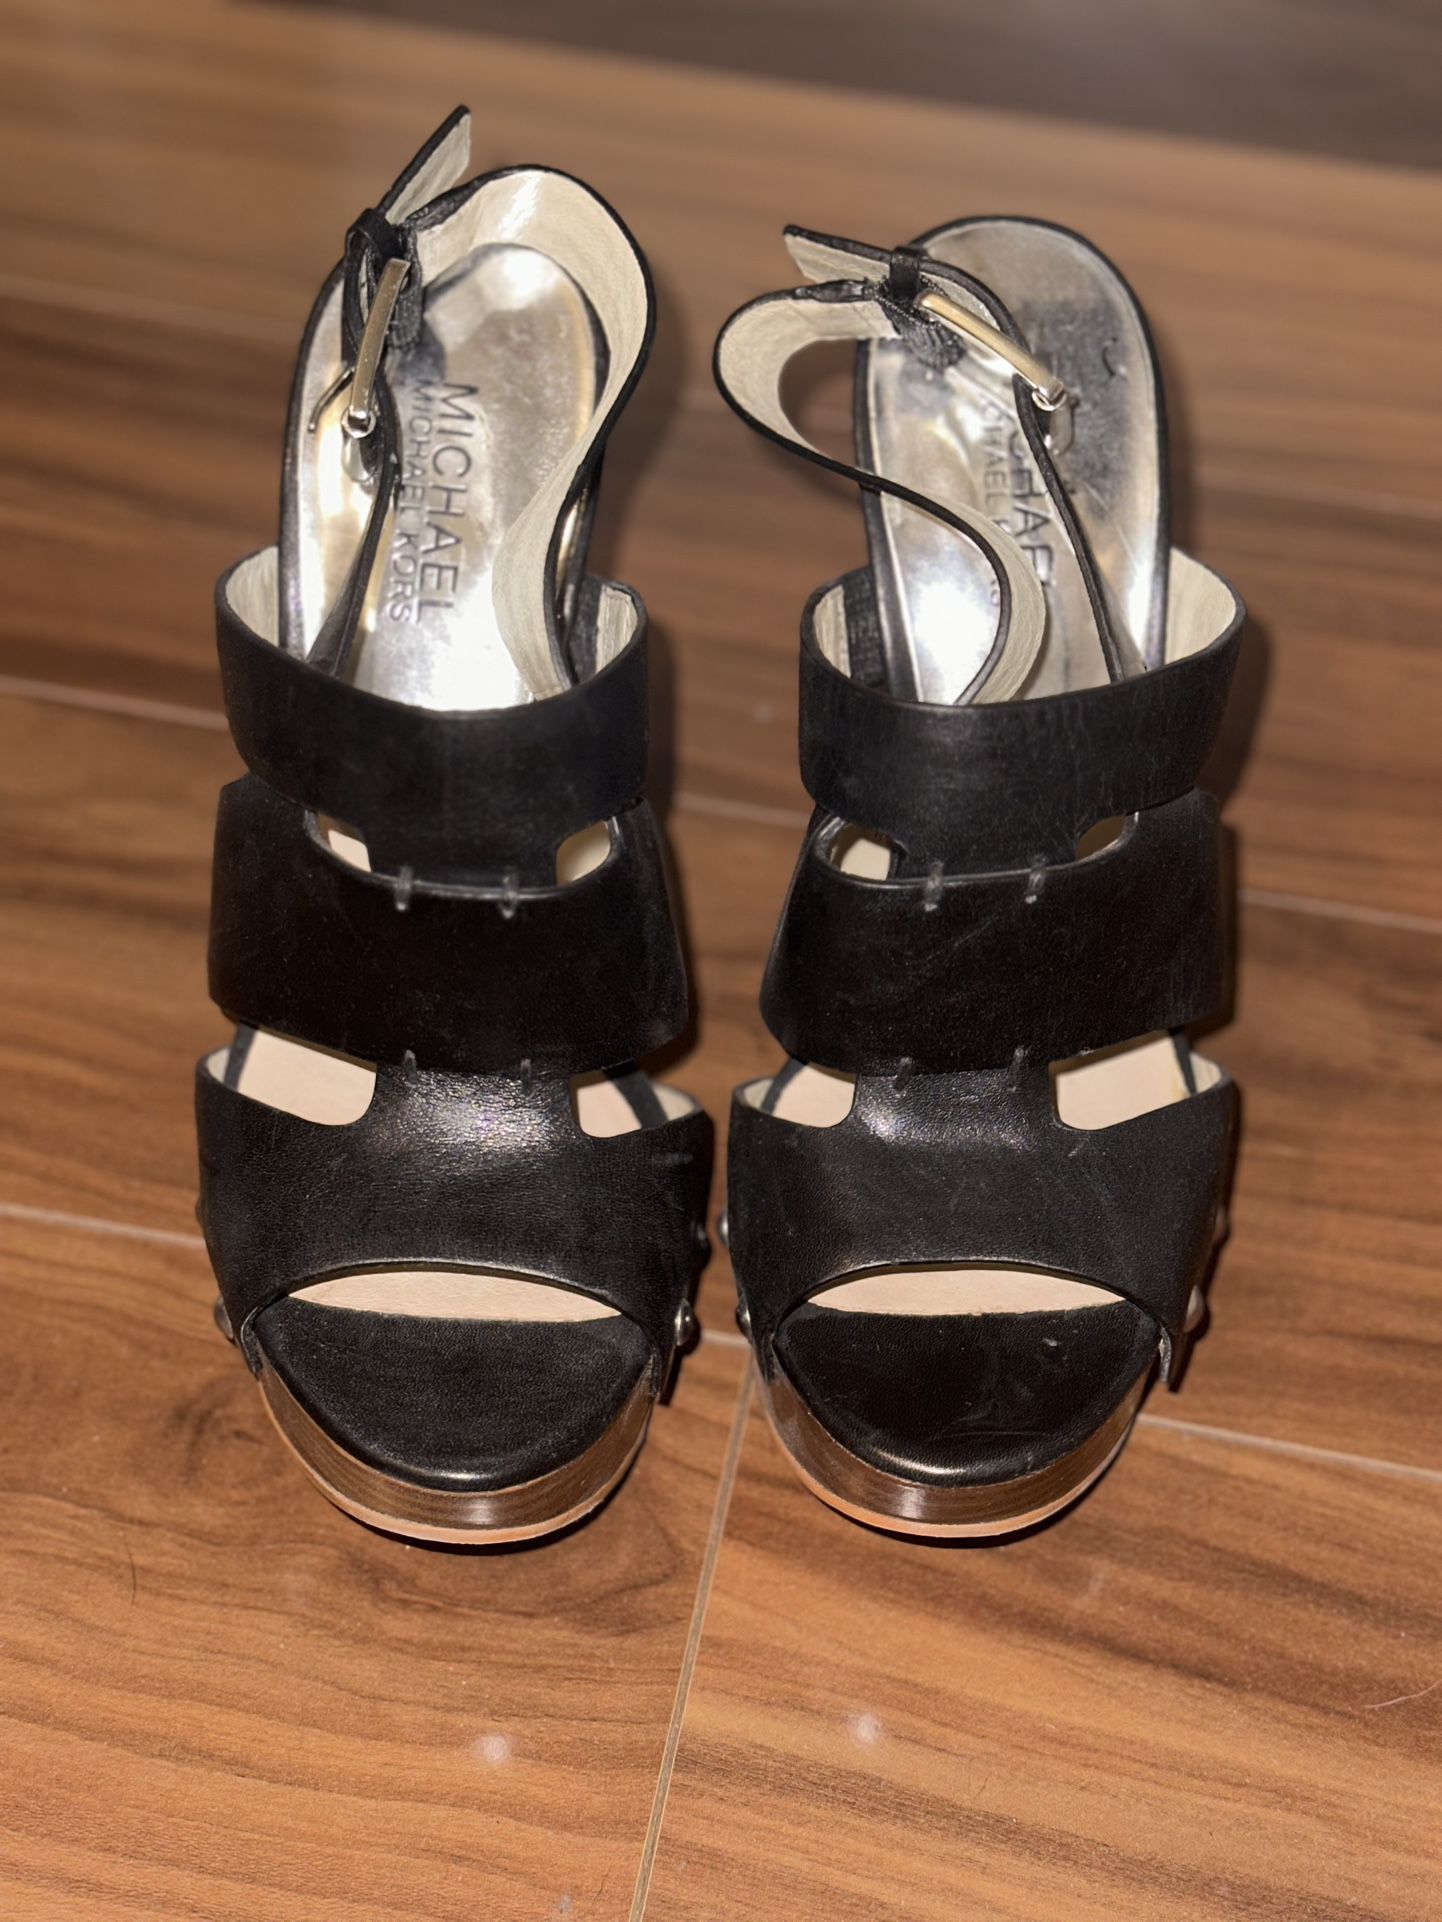 Michael Kors Black Platform High Heels Leather Shoes Sandals 